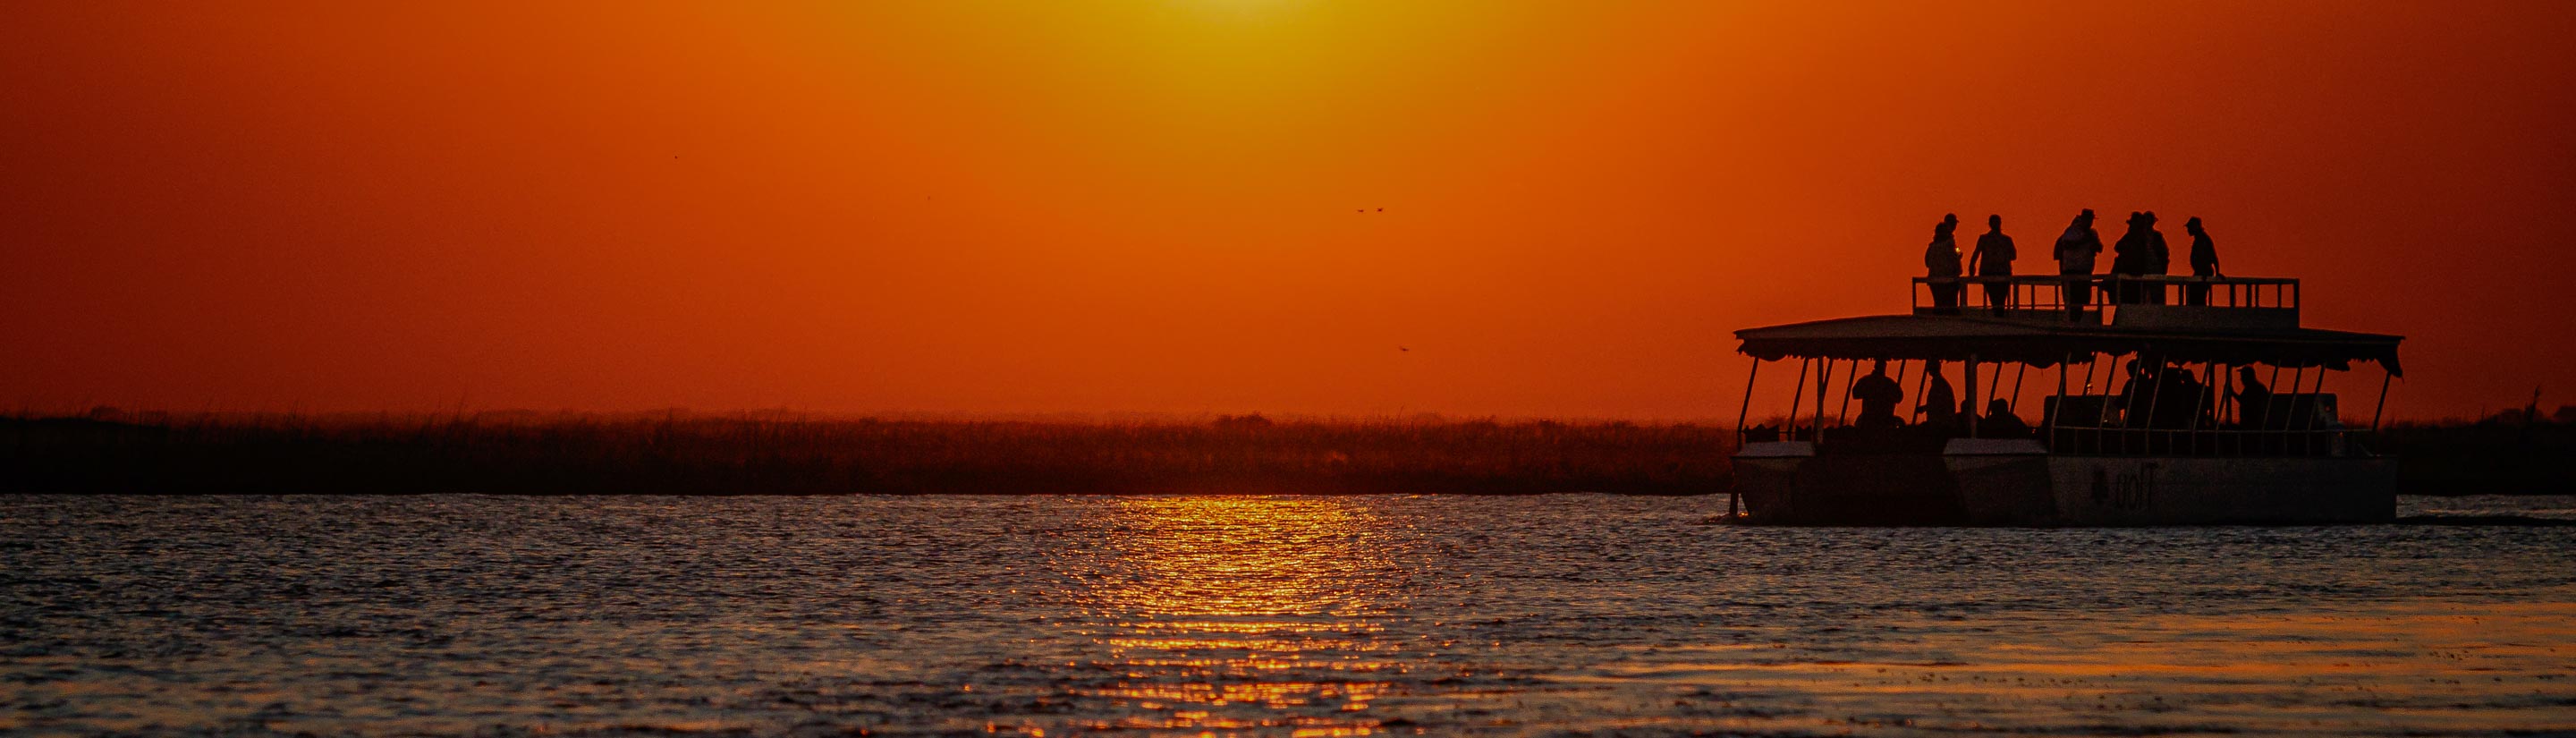 Bootsafari bei Sonnenuntergang Botswana